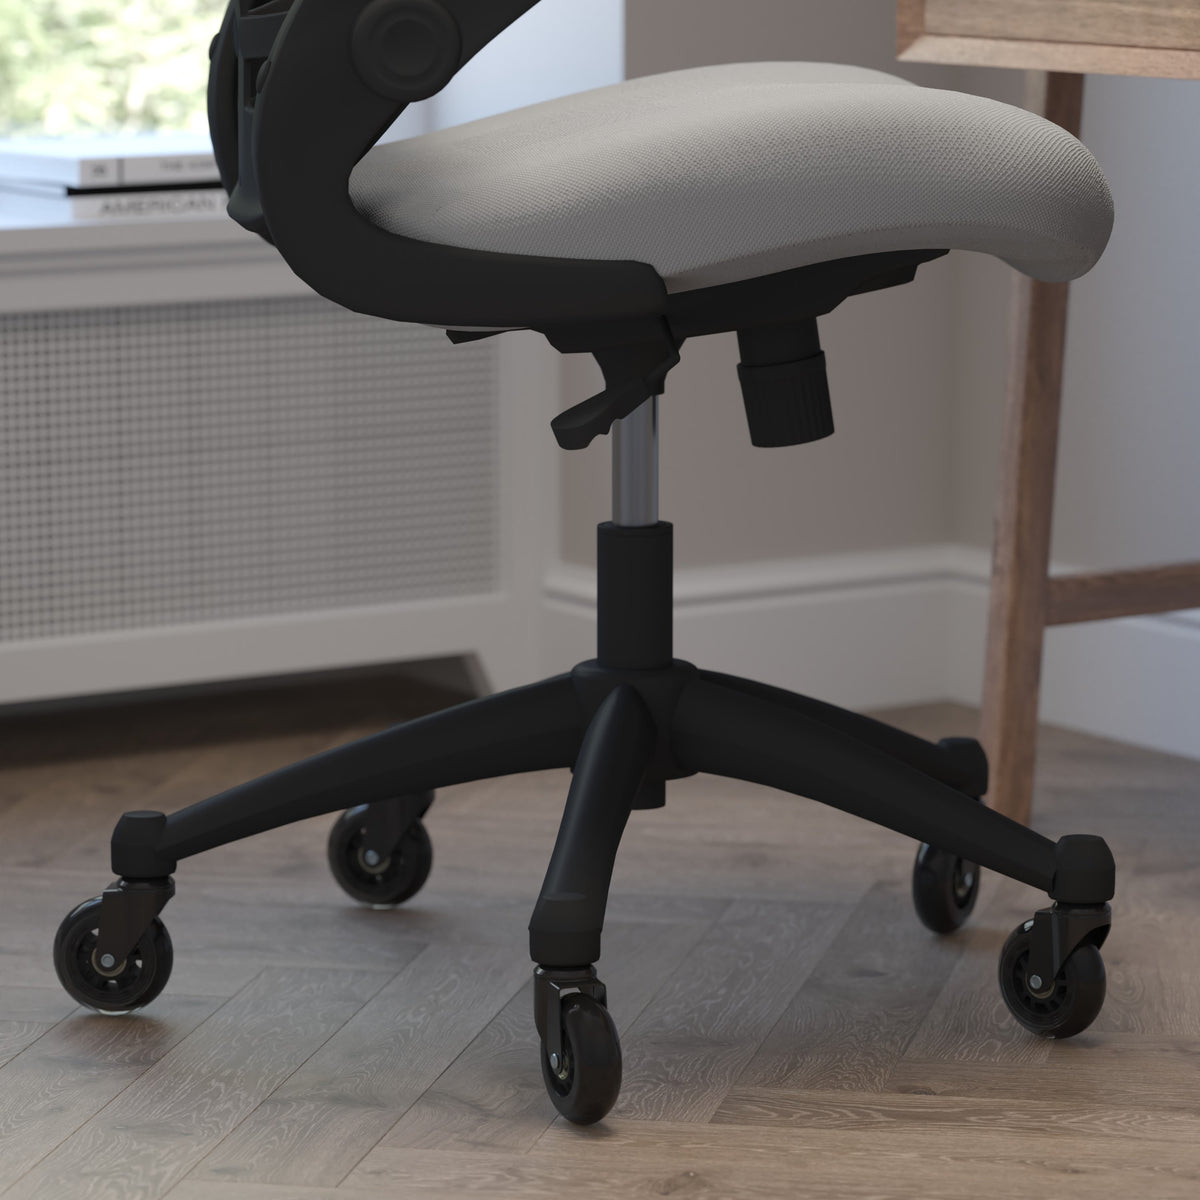 Dark Gray Mesh/Black Frame |#| Ergonomic Swivel Task Chair with Roller Wheels & Flip Up Arms - Gray Mesh